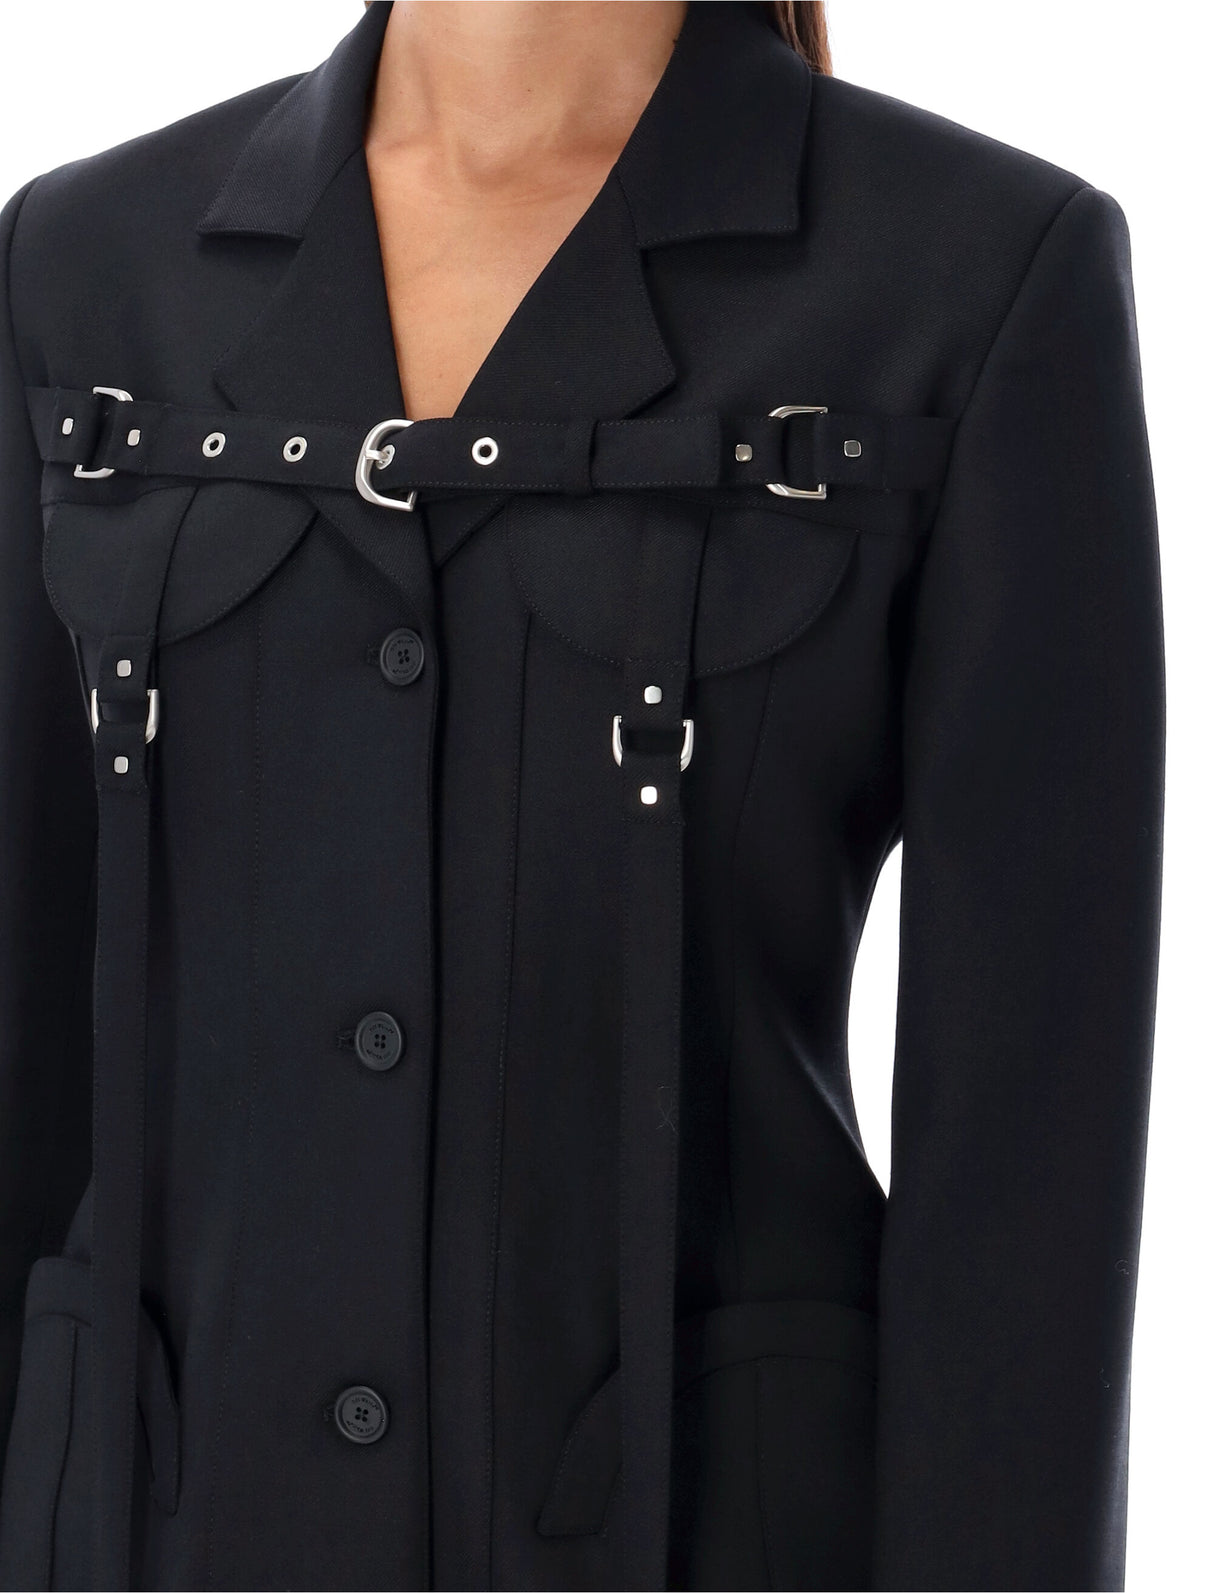 سترة كارجو سوداء للنساء مع إغلاق حزام قابل للتعديل - FW23